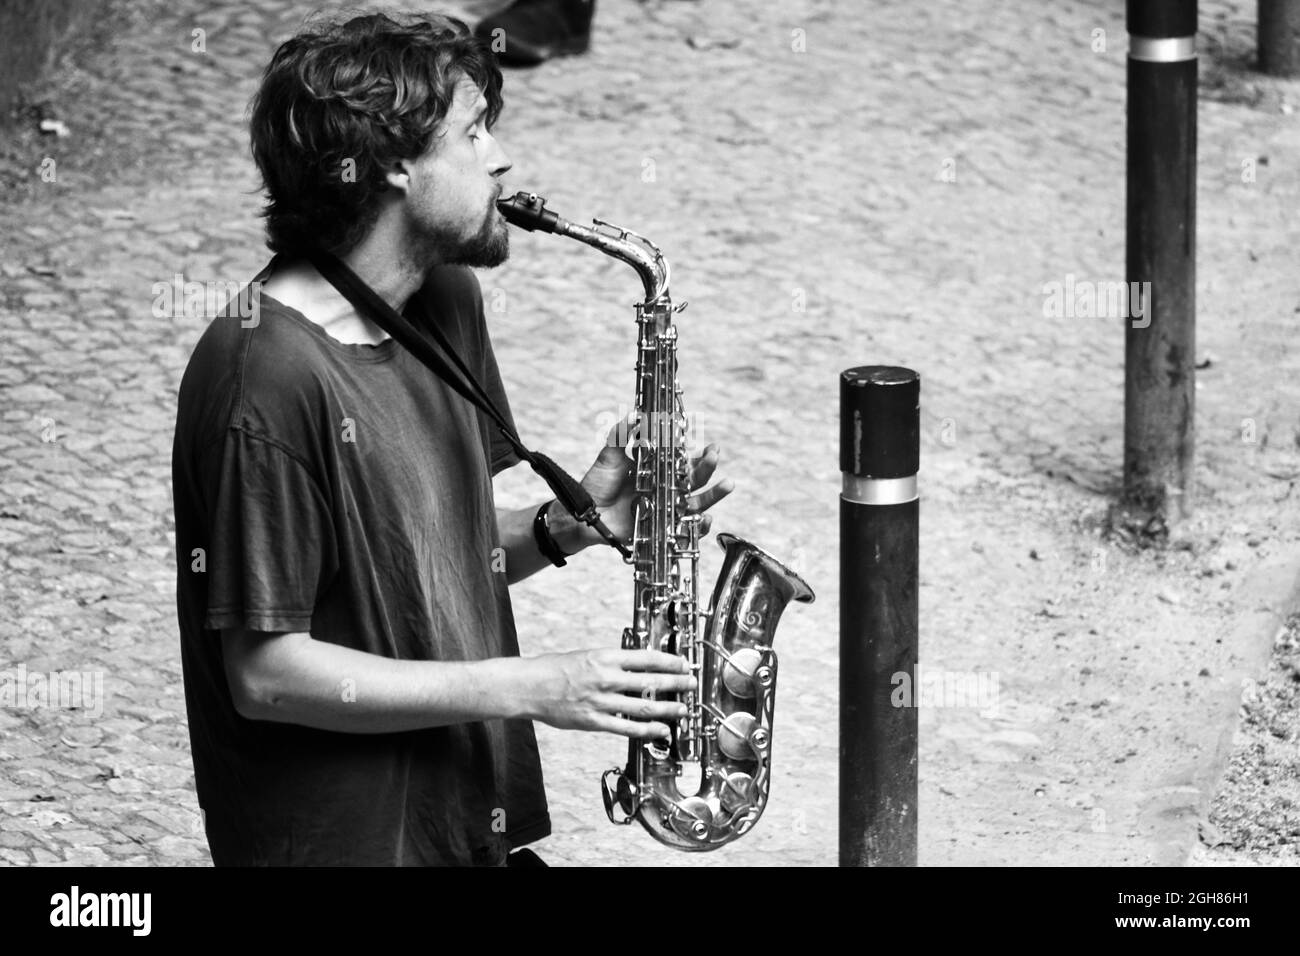 Sintra, Portugal; 02 septembre 2021: Jeune barbu jouant émotionnellement du saxophone dans la rue Banque D'Images